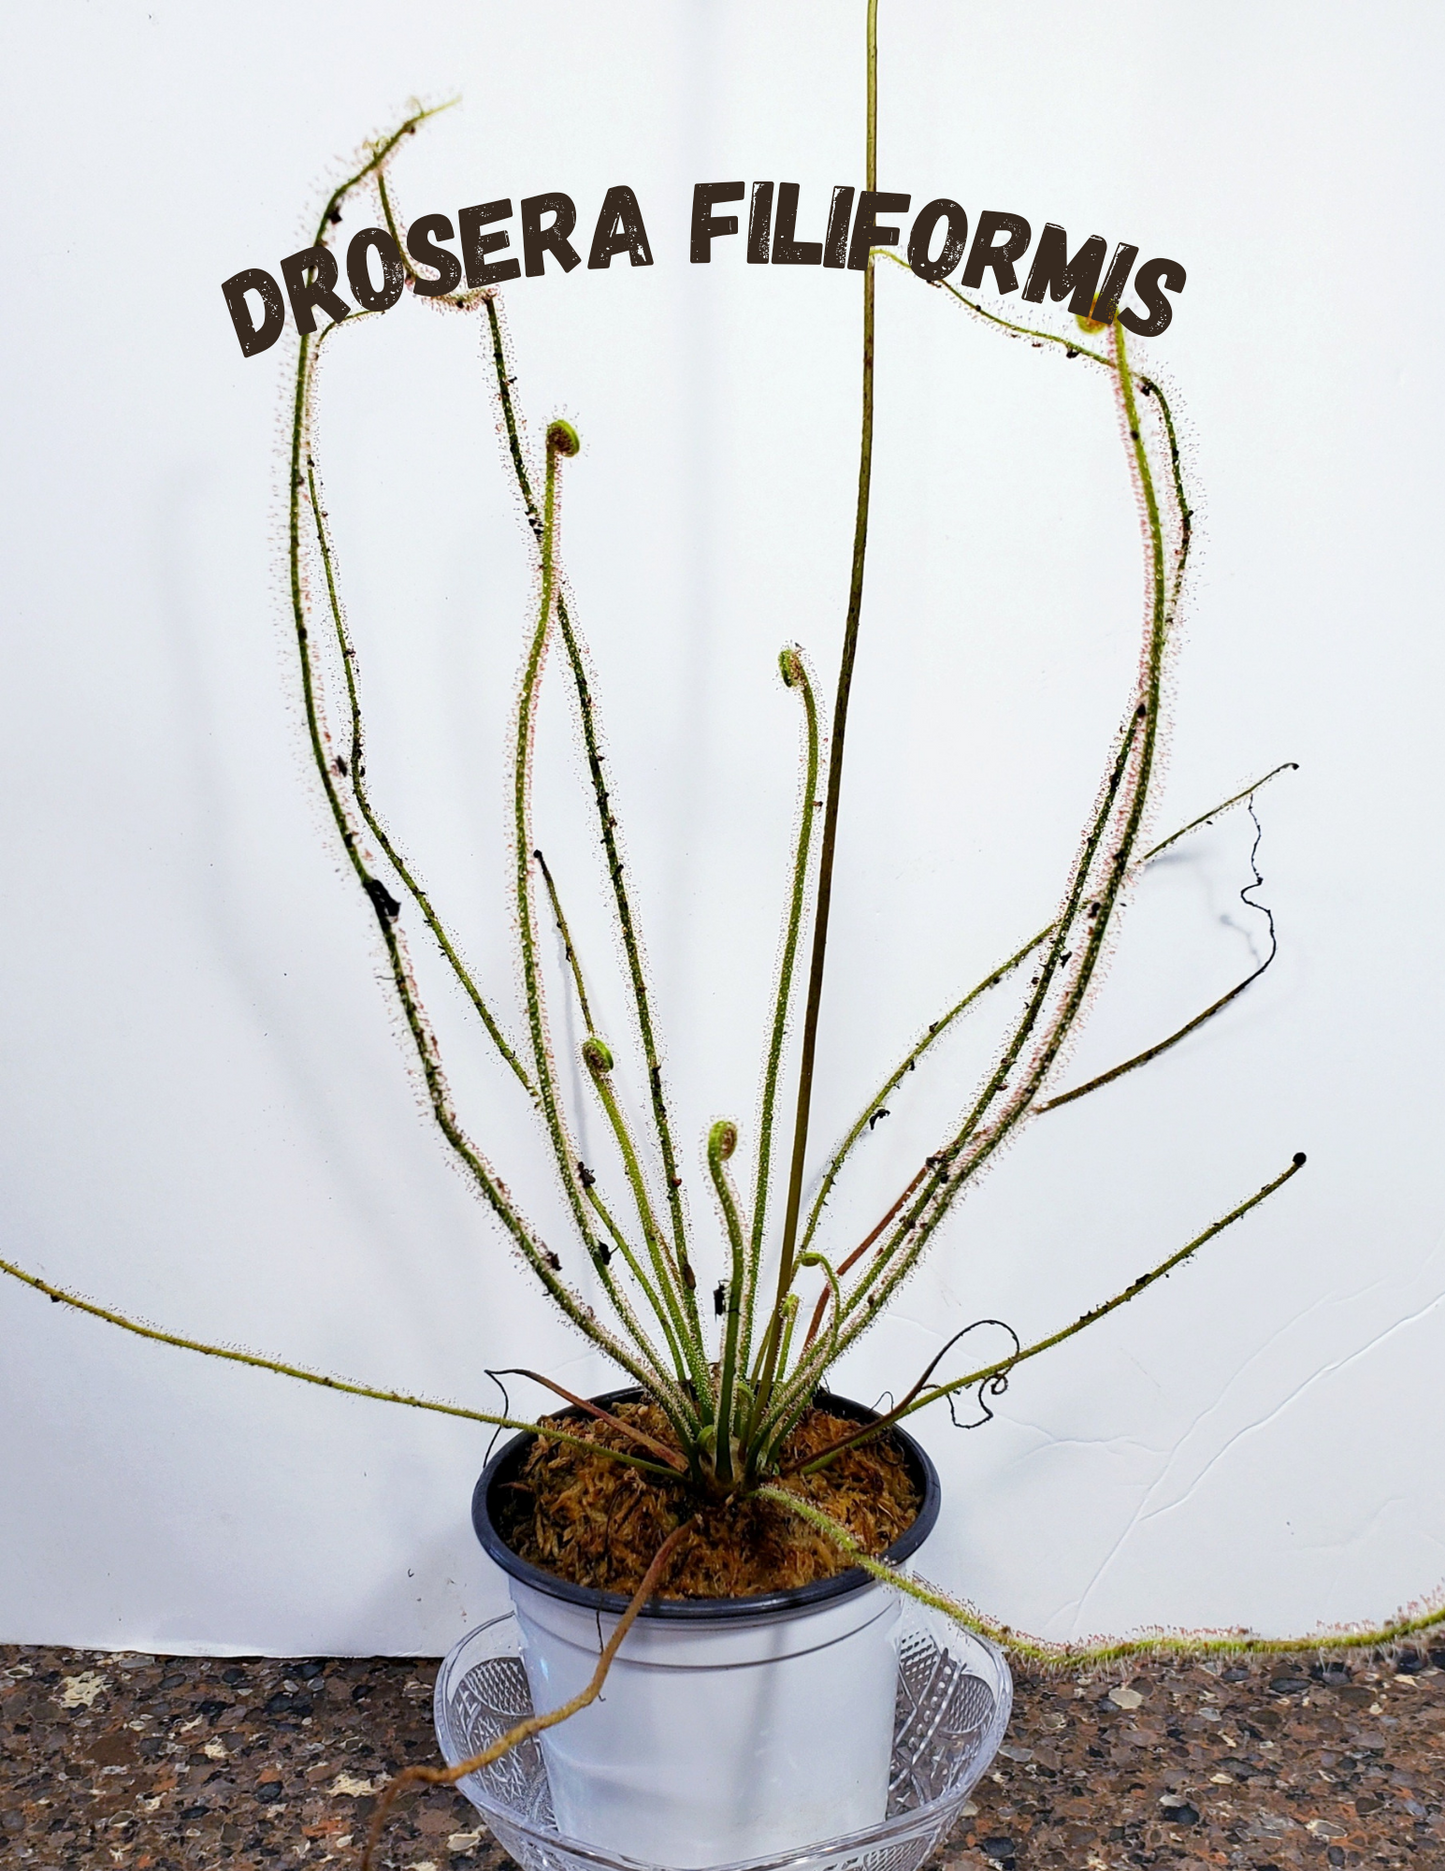 Drosera Filiformis - Thread leaved sundew